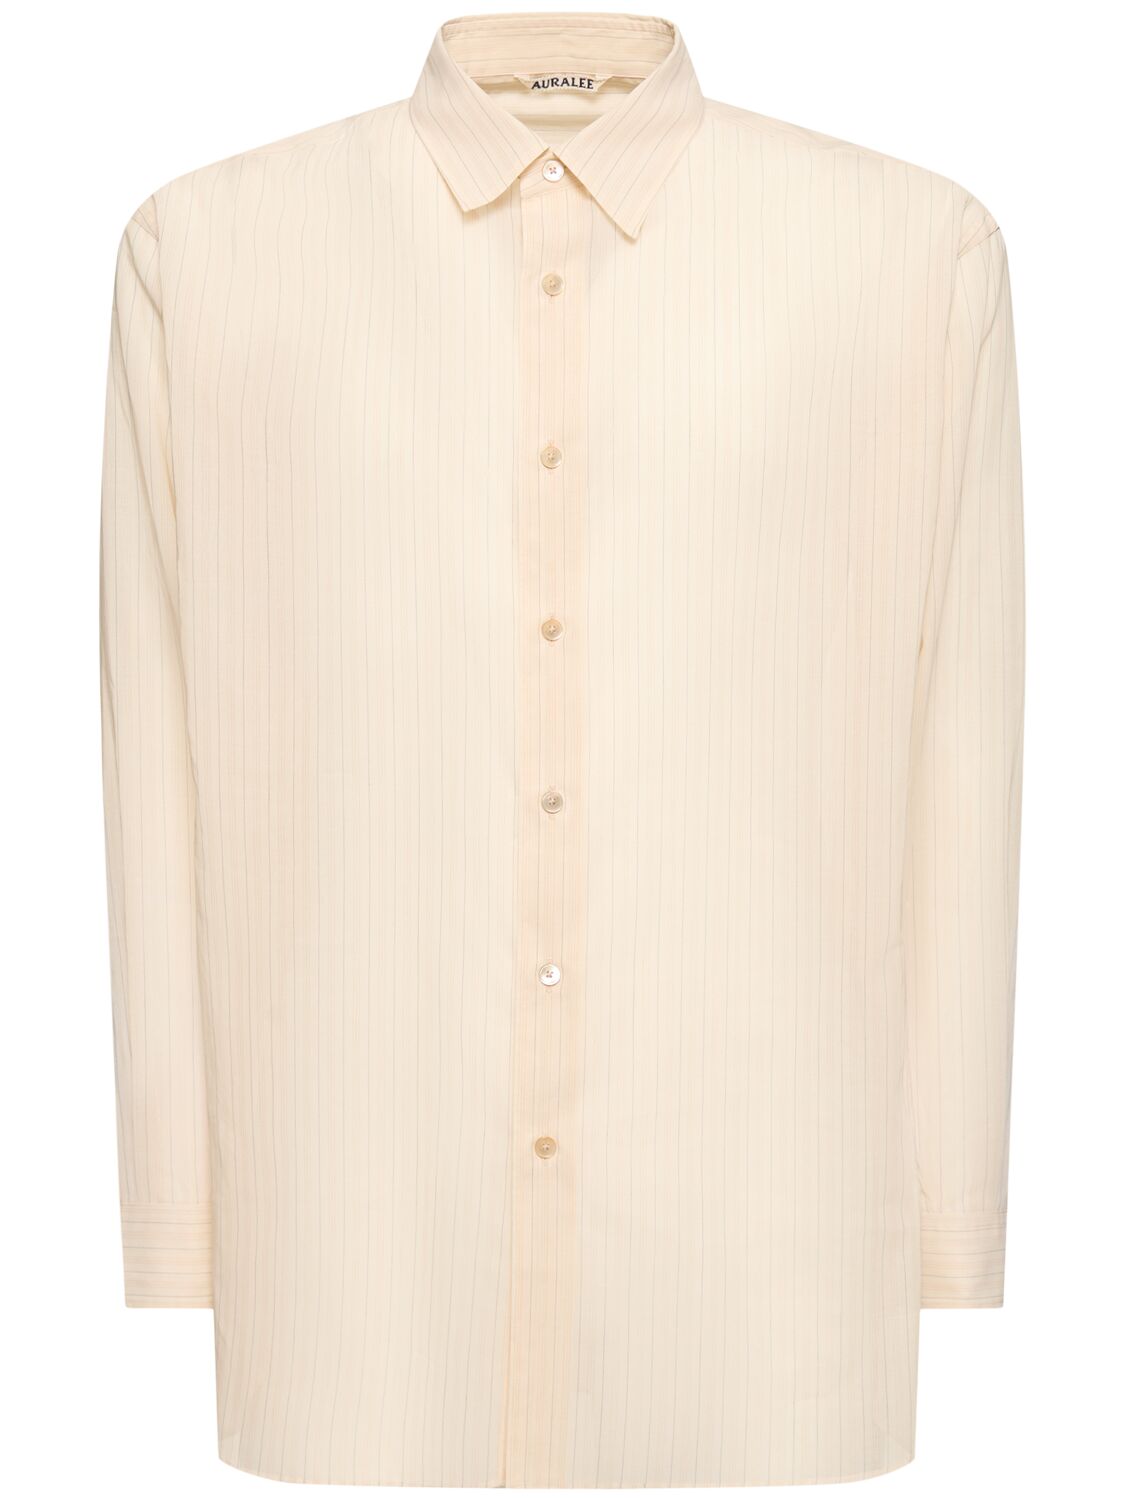 Auralee Striped Cotton Organza Shirt In Beige